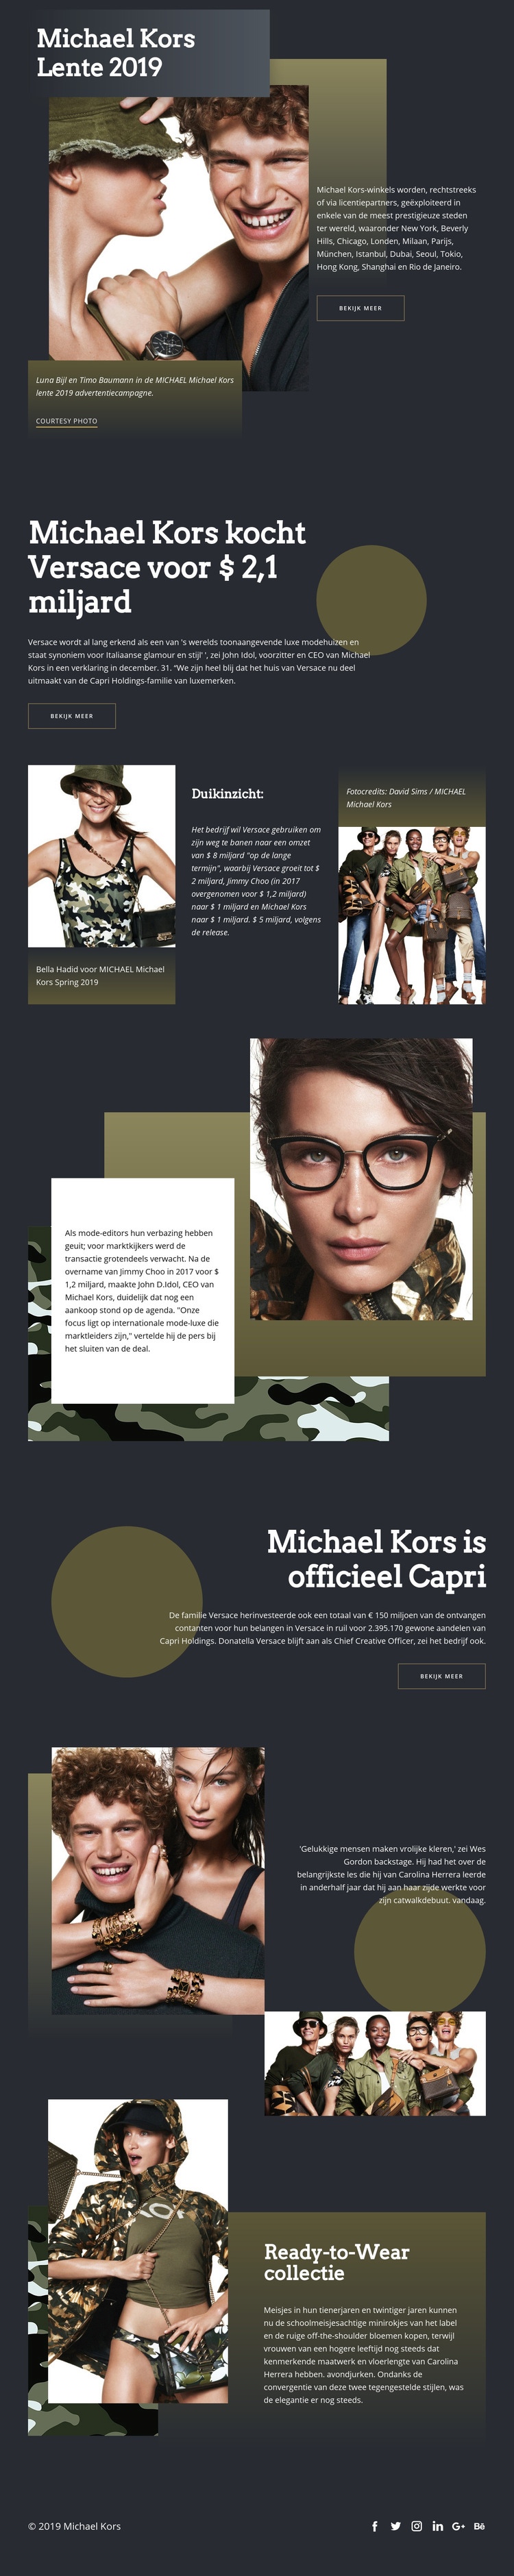 Michael Kors Dark Website ontwerp